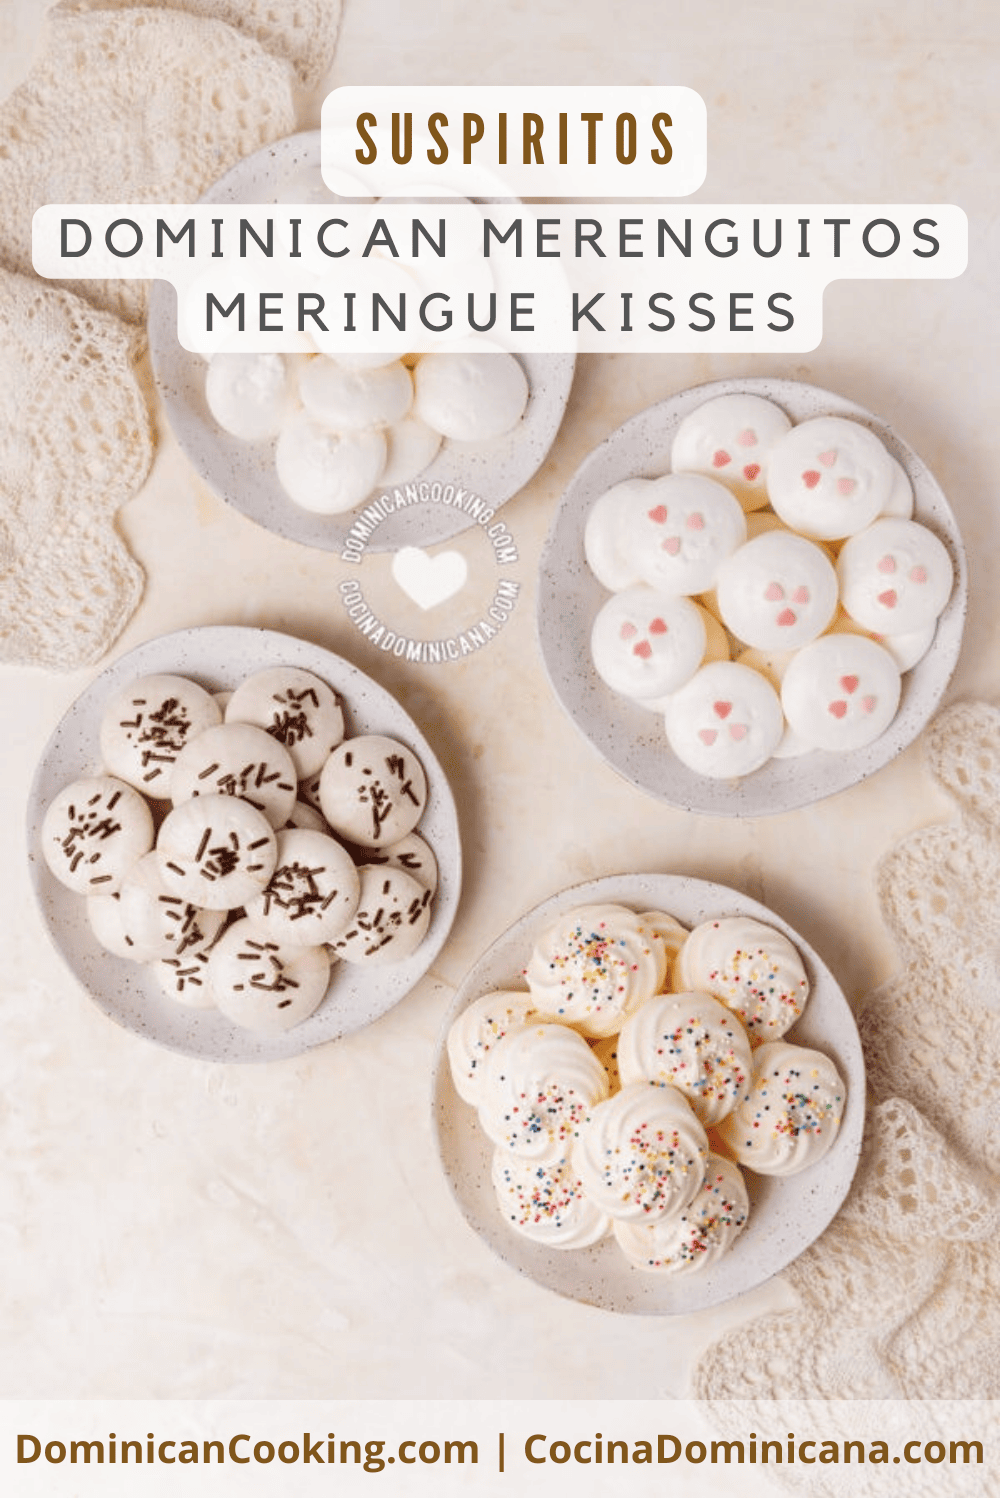 Suspiritos (dominican merenguitos meringue kisses) recipe.